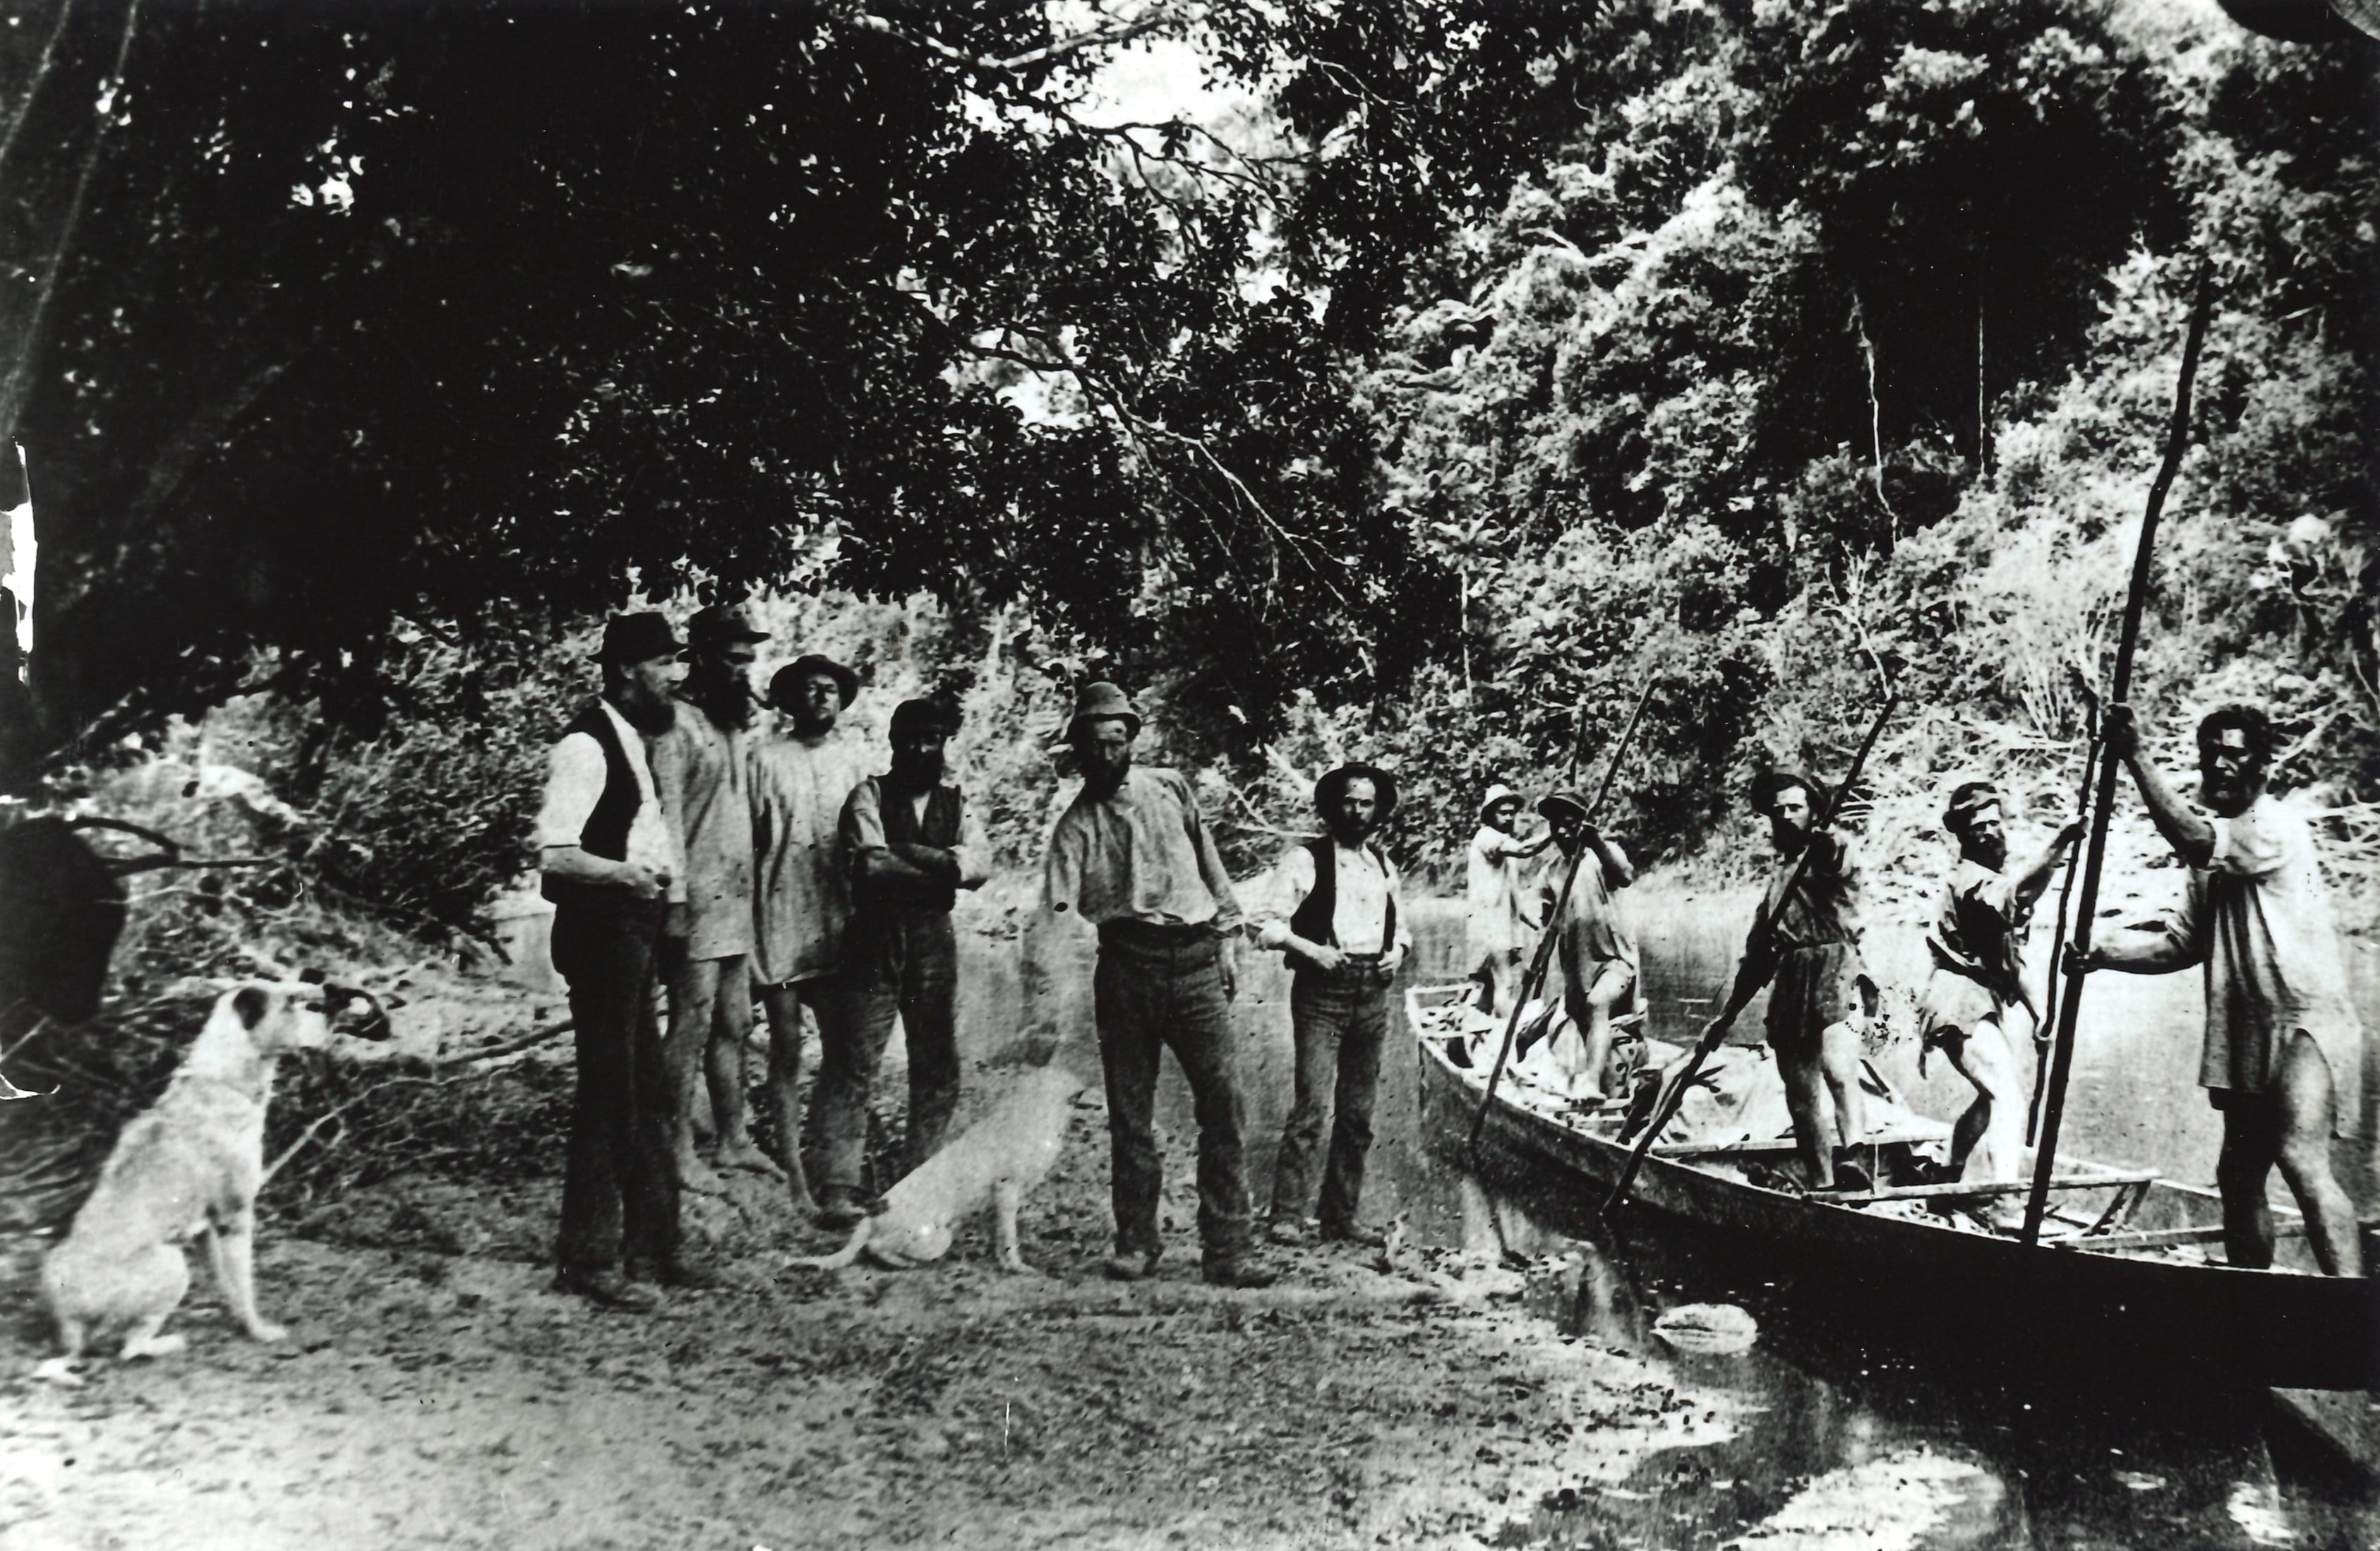 P.2.3253 HM Skeet Survey Party On Mokau River, 1884